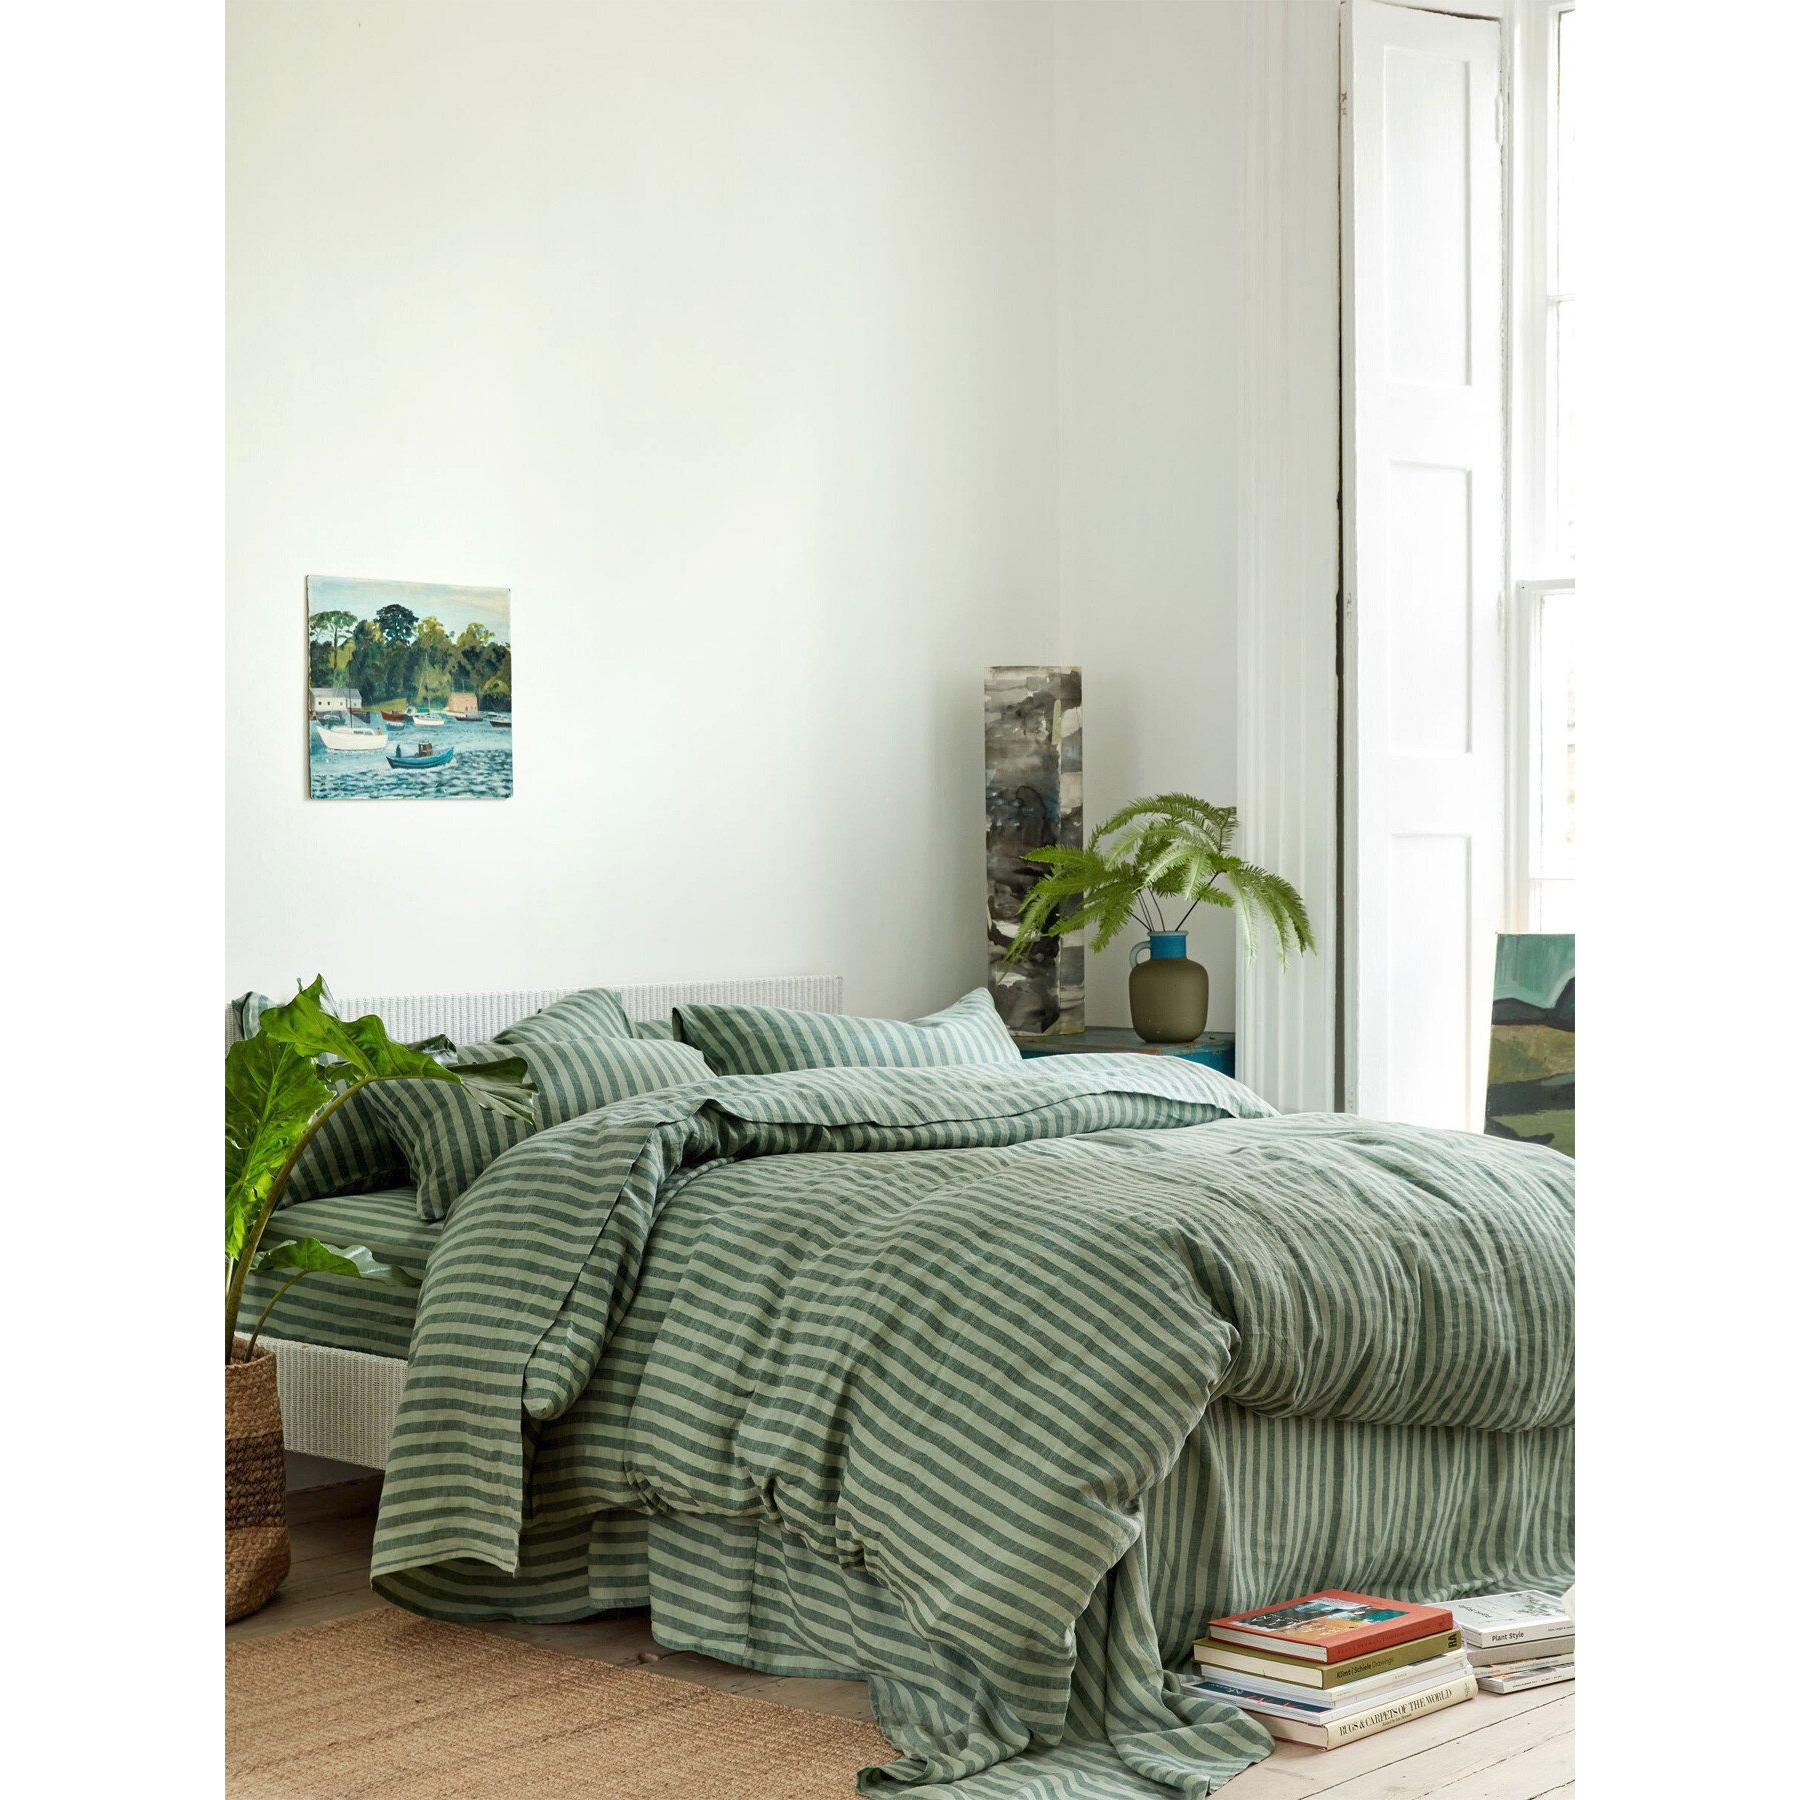 Piglet in Bed Pembroke Stripe Linen Flat Sheet - Size Double Green - image 1